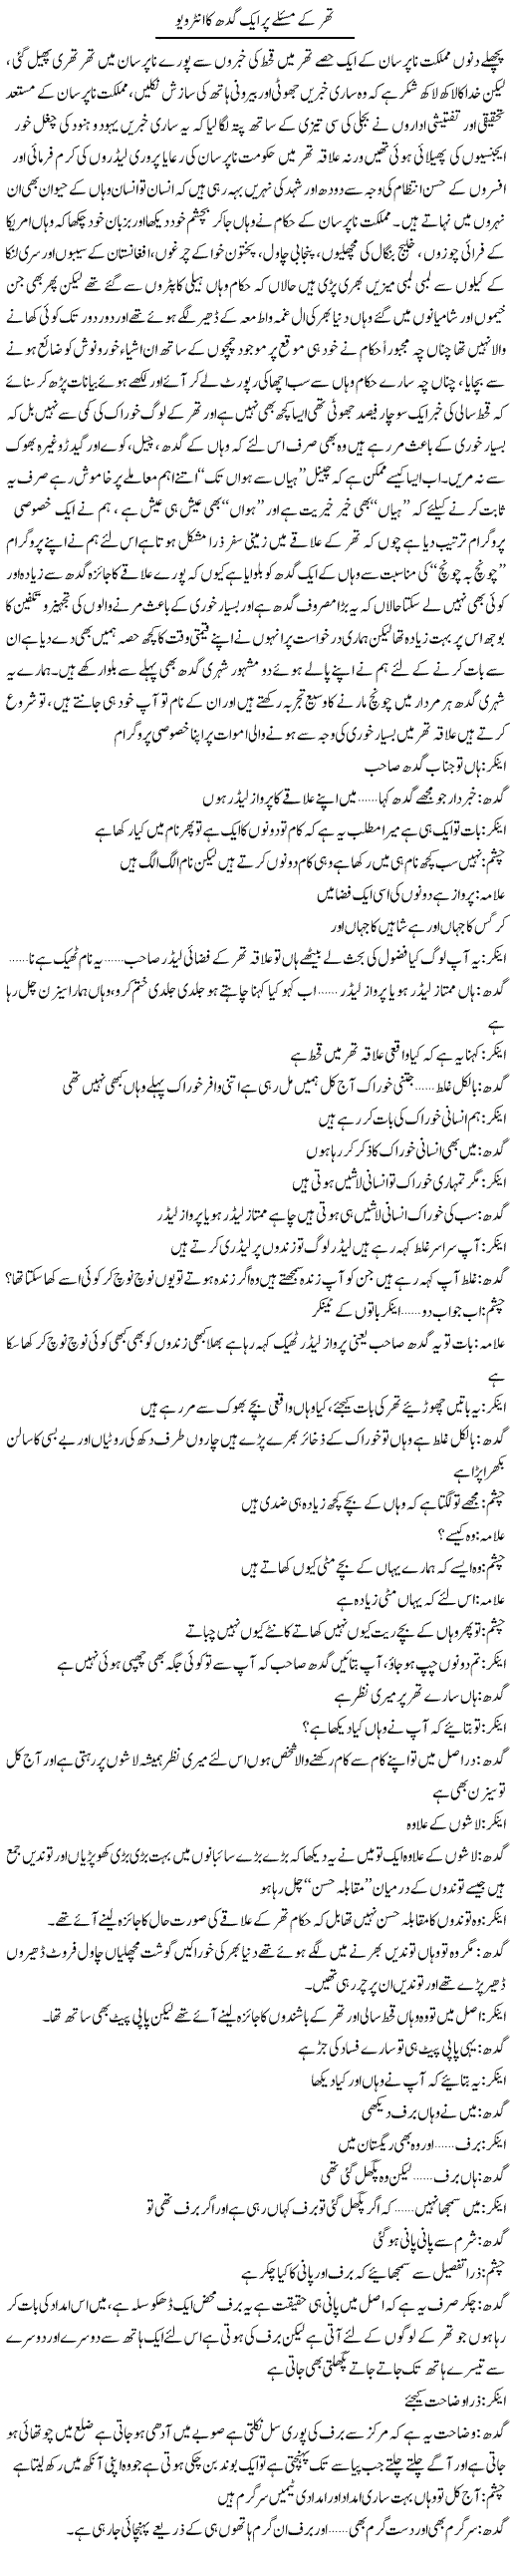 Thar Kay Masle Par Aik Gadh Ka Interview | Saad Ullah Jan Barq | Daily Urdu Columns